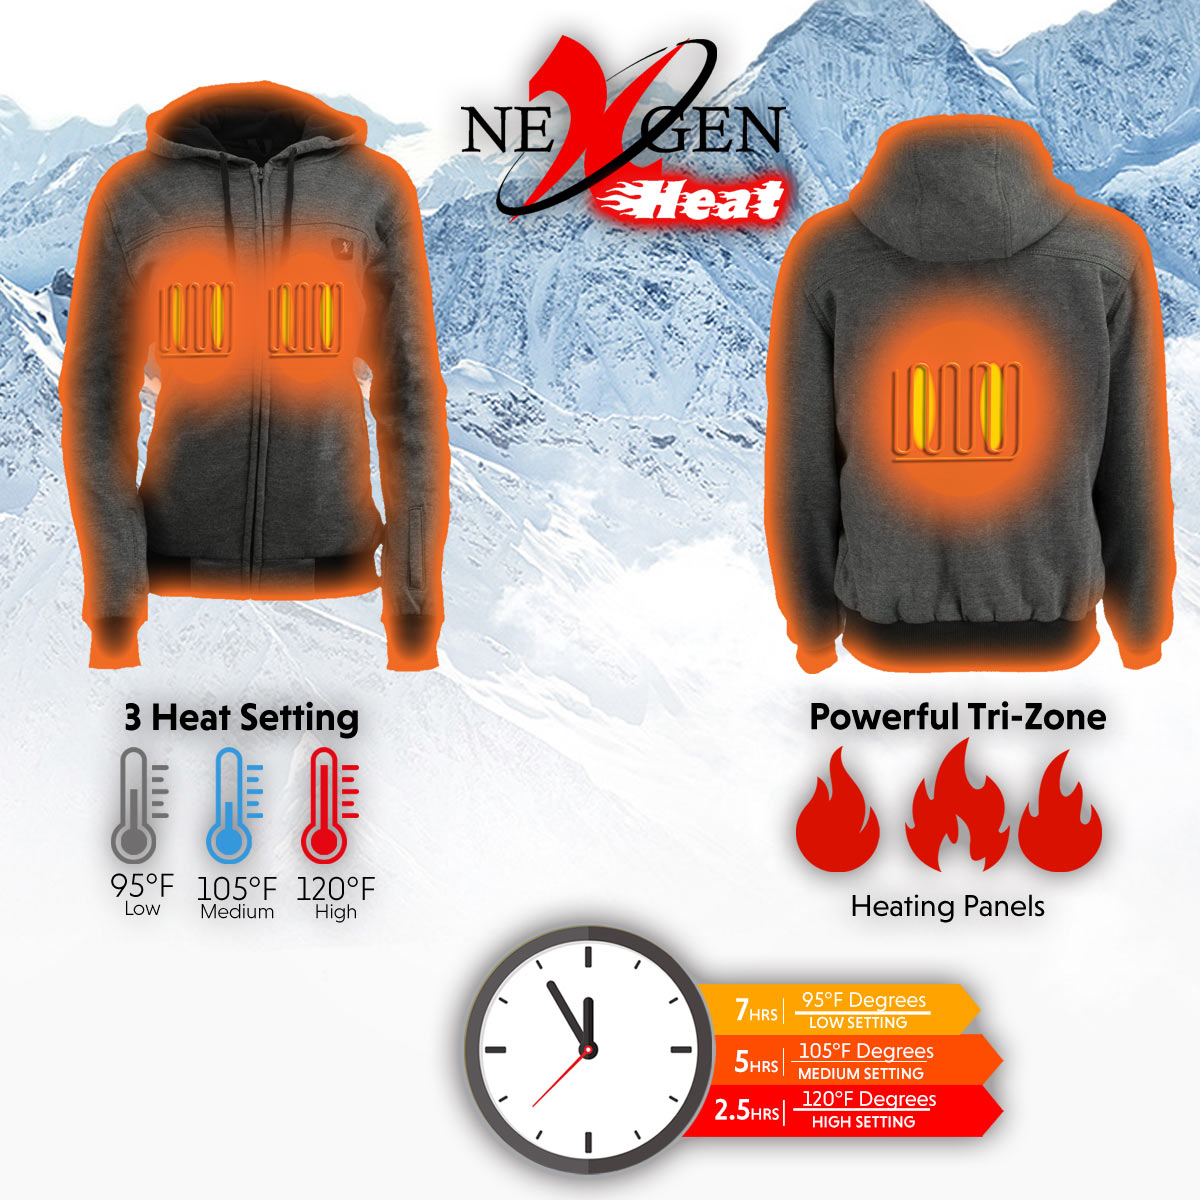 Nexgen Heat NXL2717DUAL Technology Women's Heated Hoodie - Grey Sweatshirt Jacket for Winter Season w/ Battery Pack